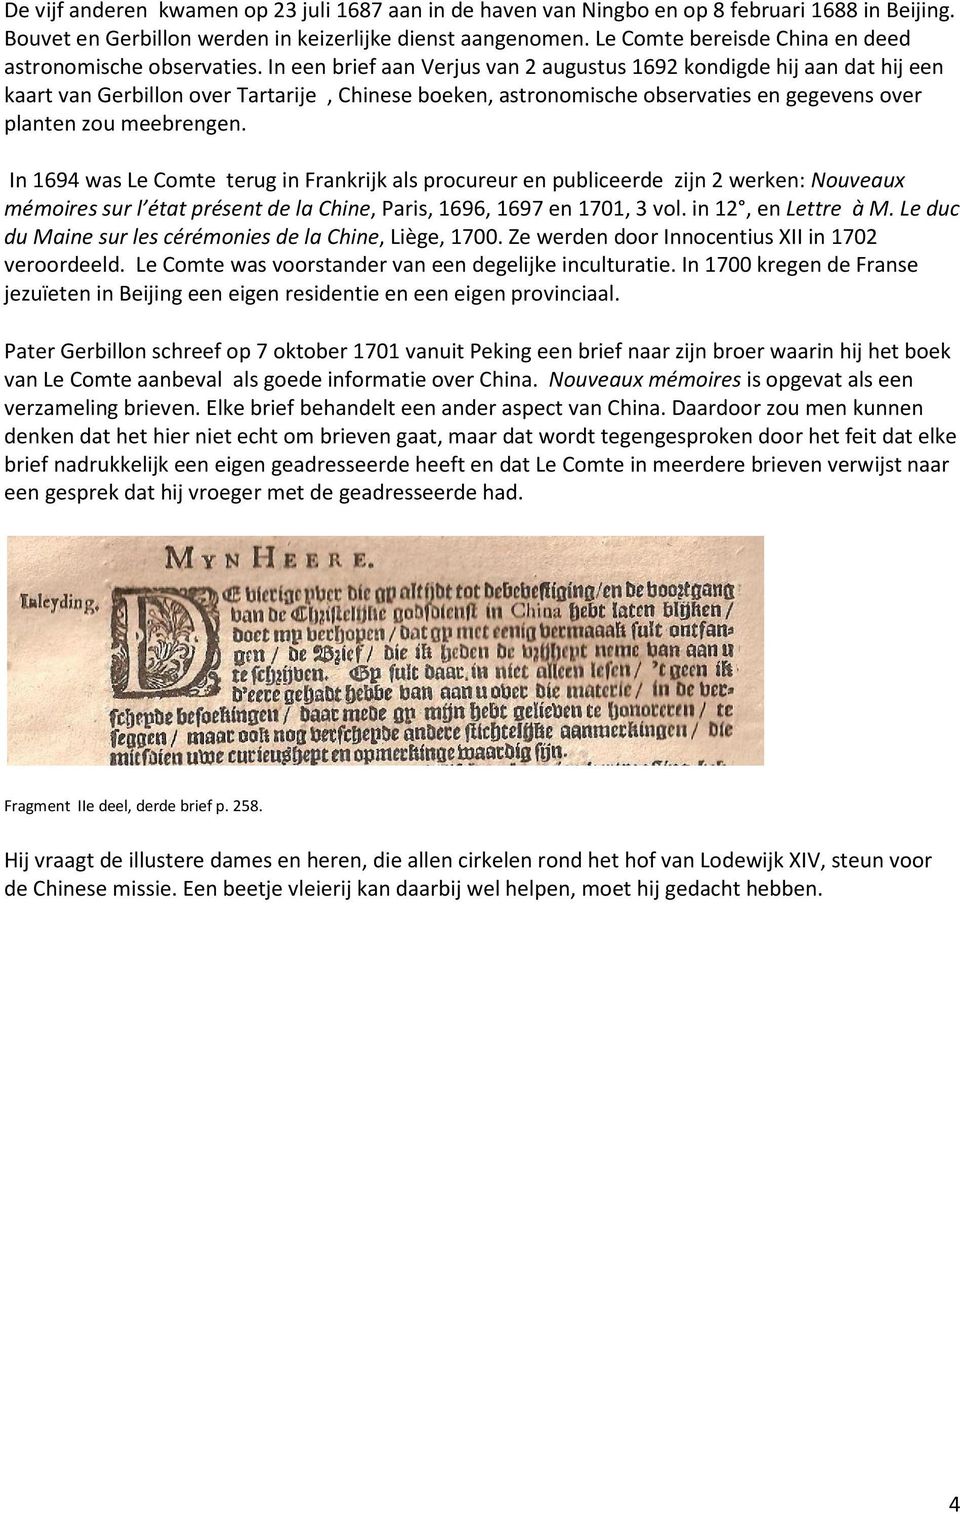 In een brief aan Verjus van 2 augustus 1692 kondigde hij aan dat hij een kaart van Gerbillon over Tartarije, Chinese boeken, astronomische observaties en gegevens over planten zou meebrengen.